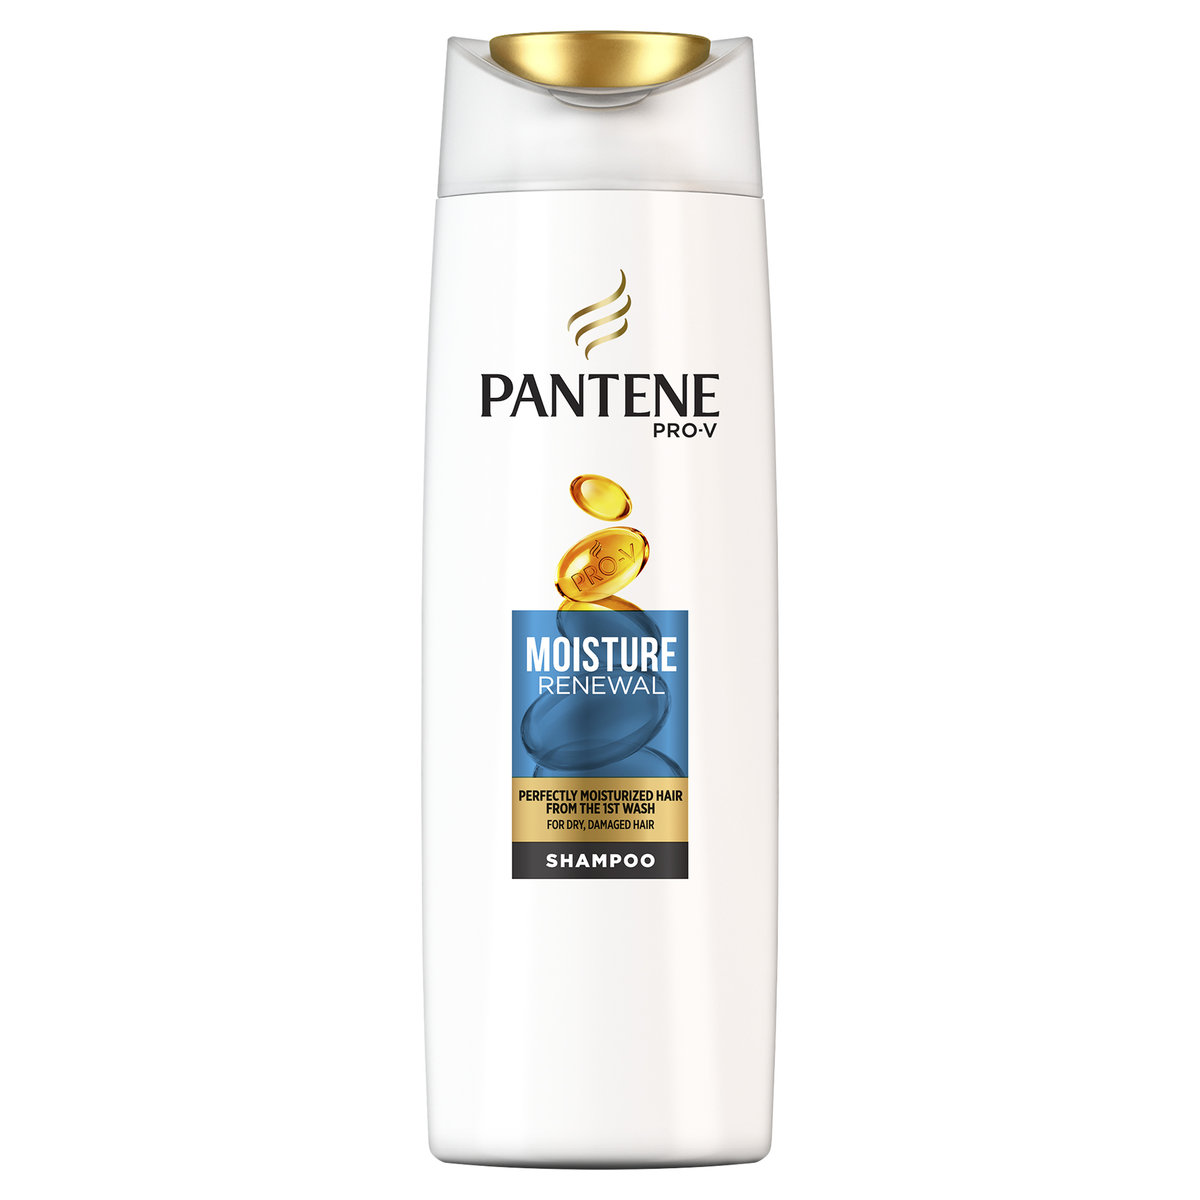 szampon pantene odnowa nawilżenia